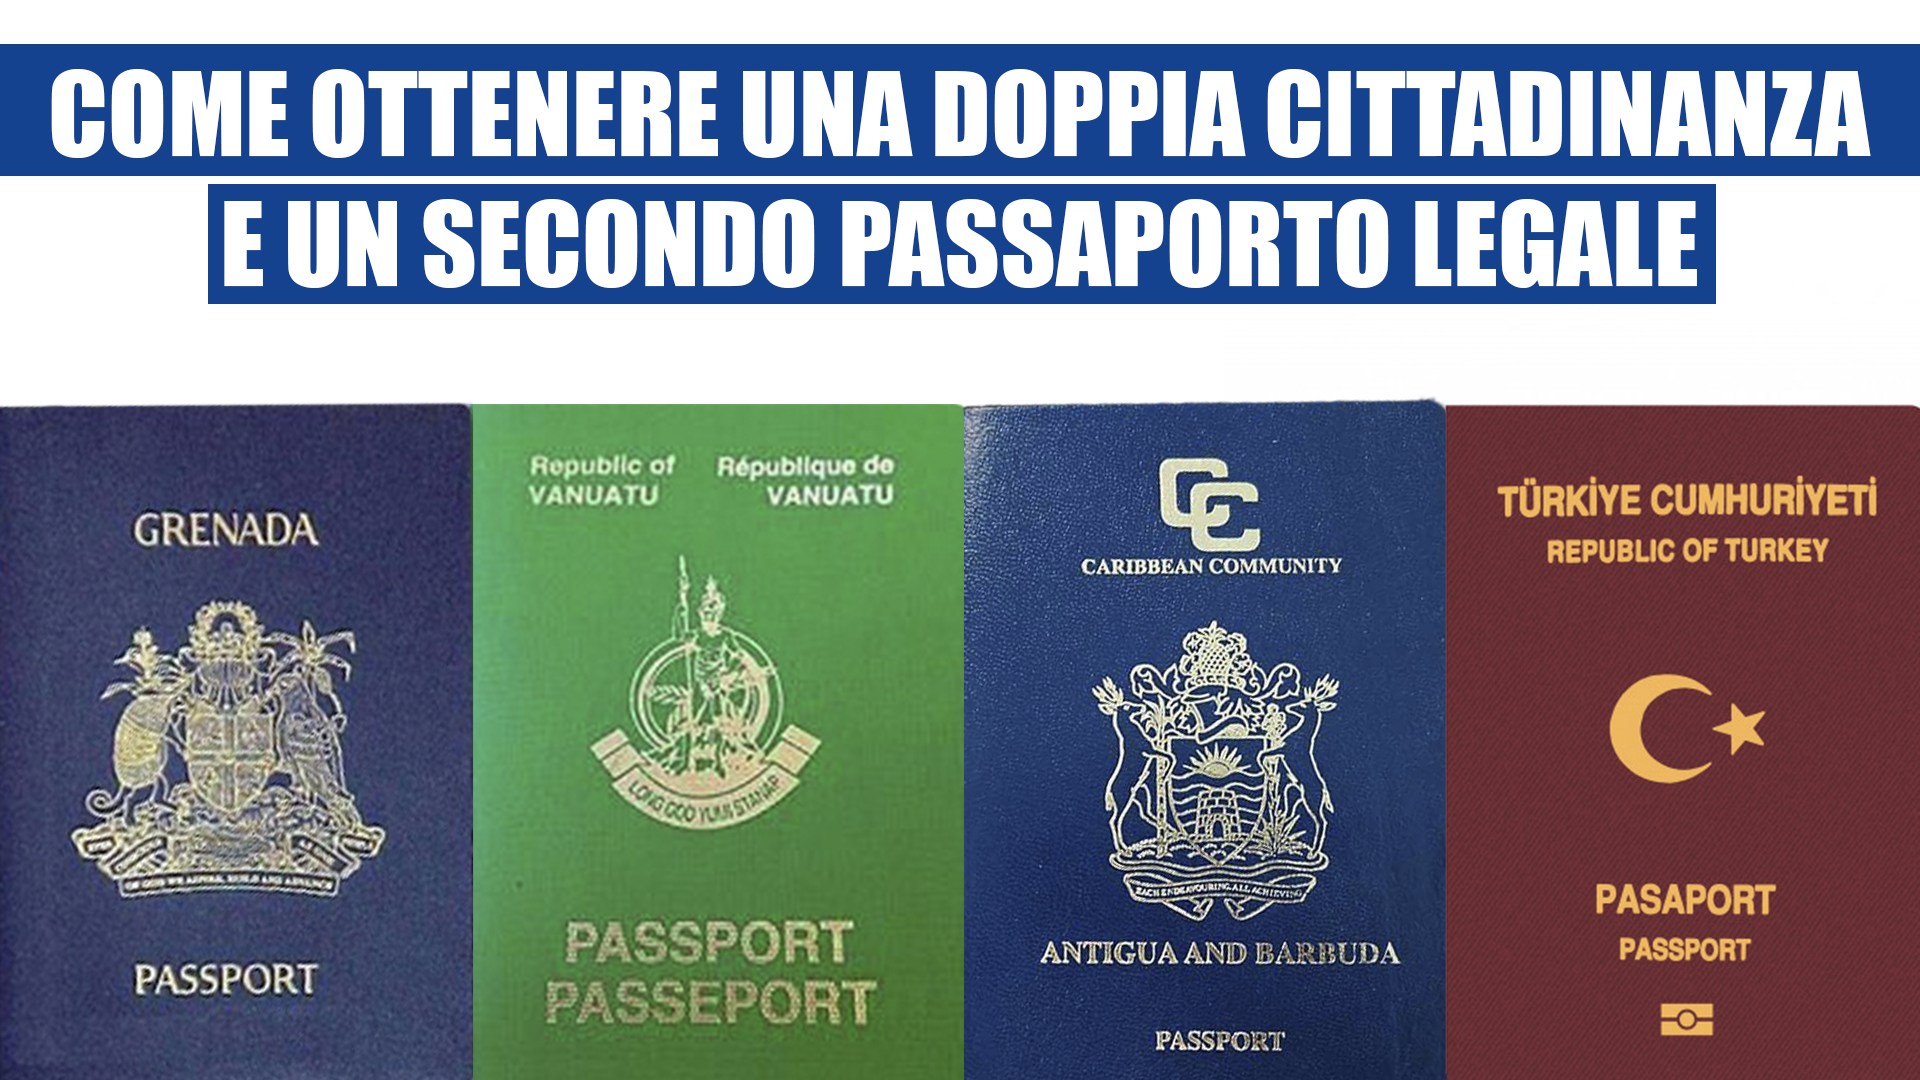 Come ottenere una doppia cittadinanza e secondo passaporto legale